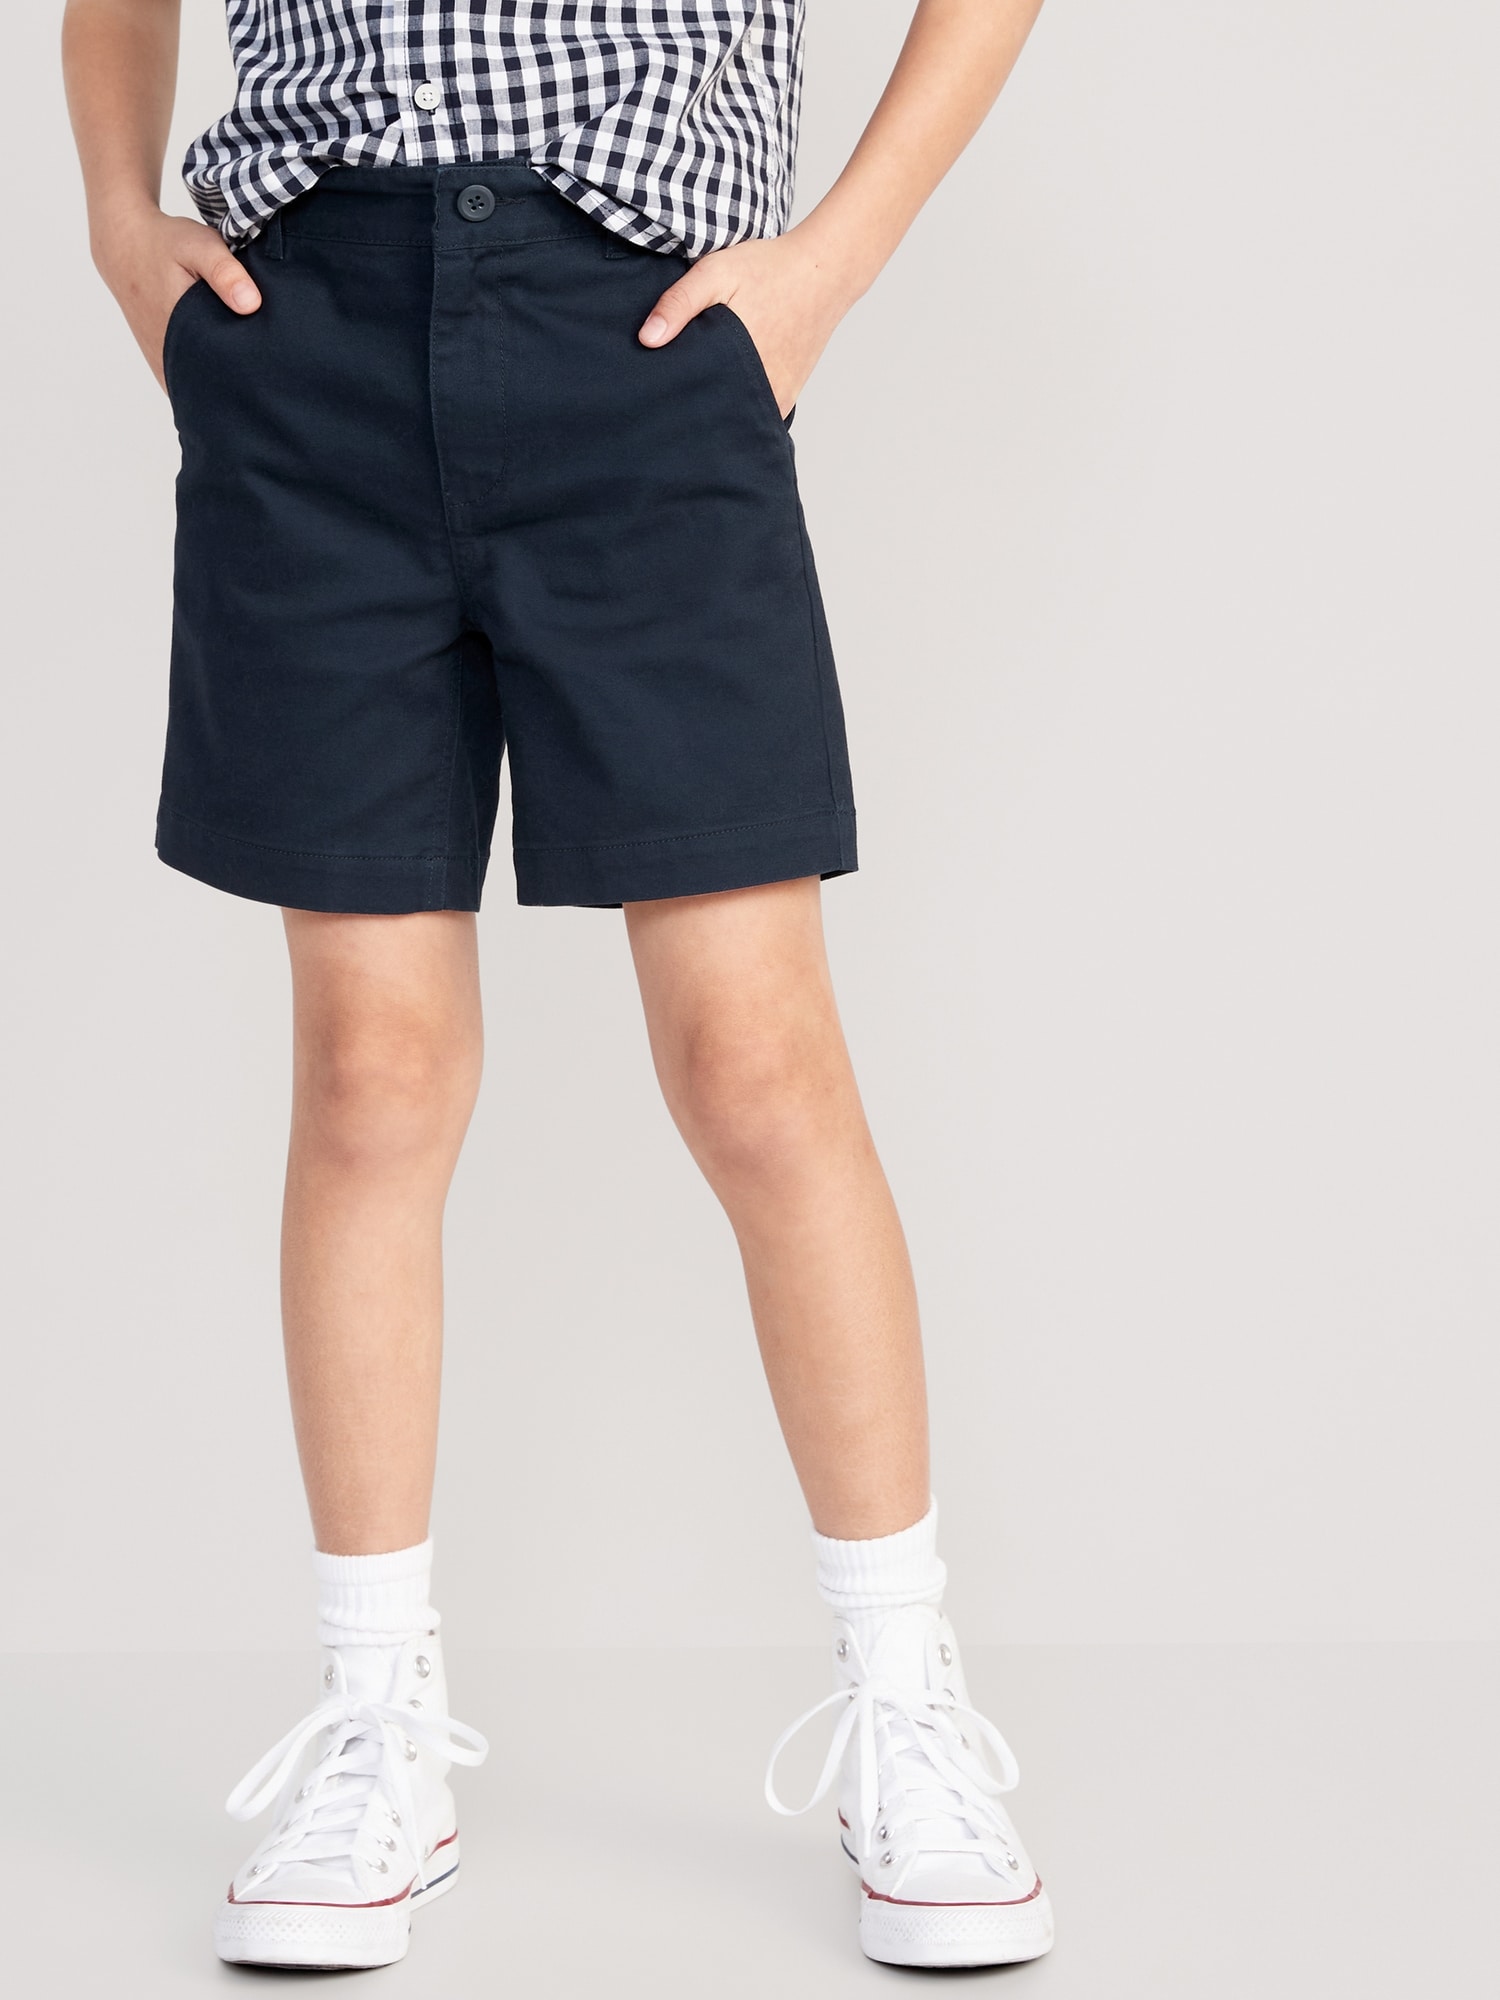 Old Navy Built-In Flex Twill Straight Uniform Shorts - Depop